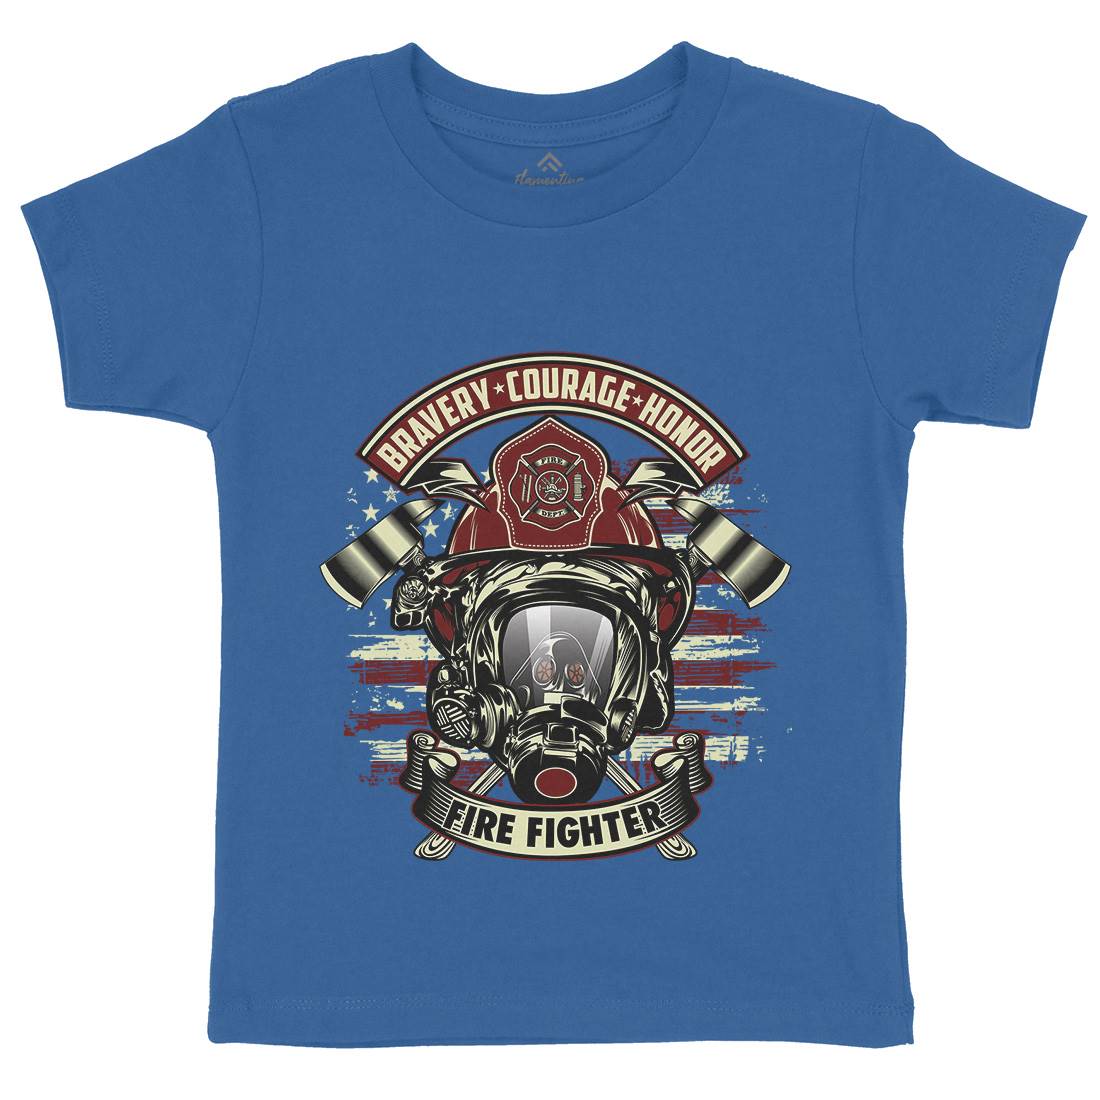 Fire Fighter Kids Crew Neck T-Shirt Firefighters D030